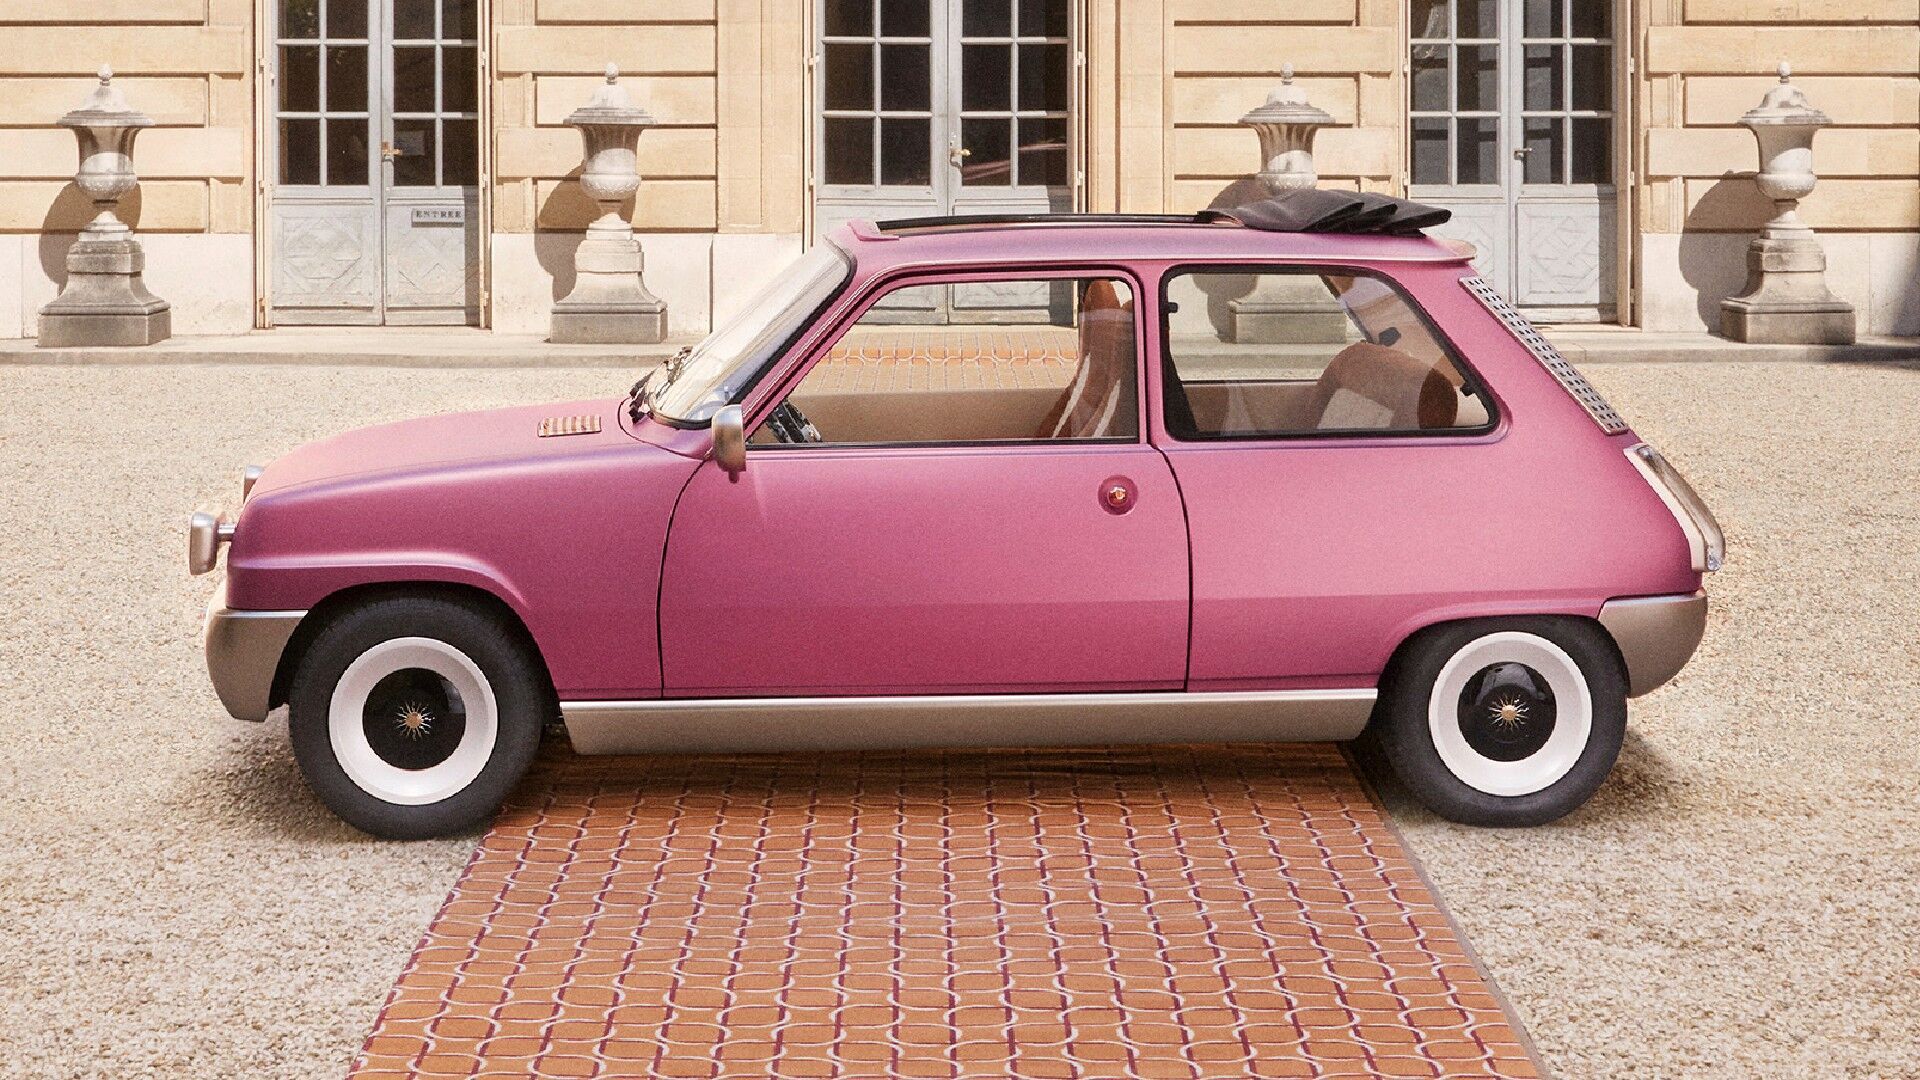 Основная часть кузова окрашена розовой краской с золотыми пигментами и матовым лаком в сочетании с золотыми акцентами в нижней части автомобиля